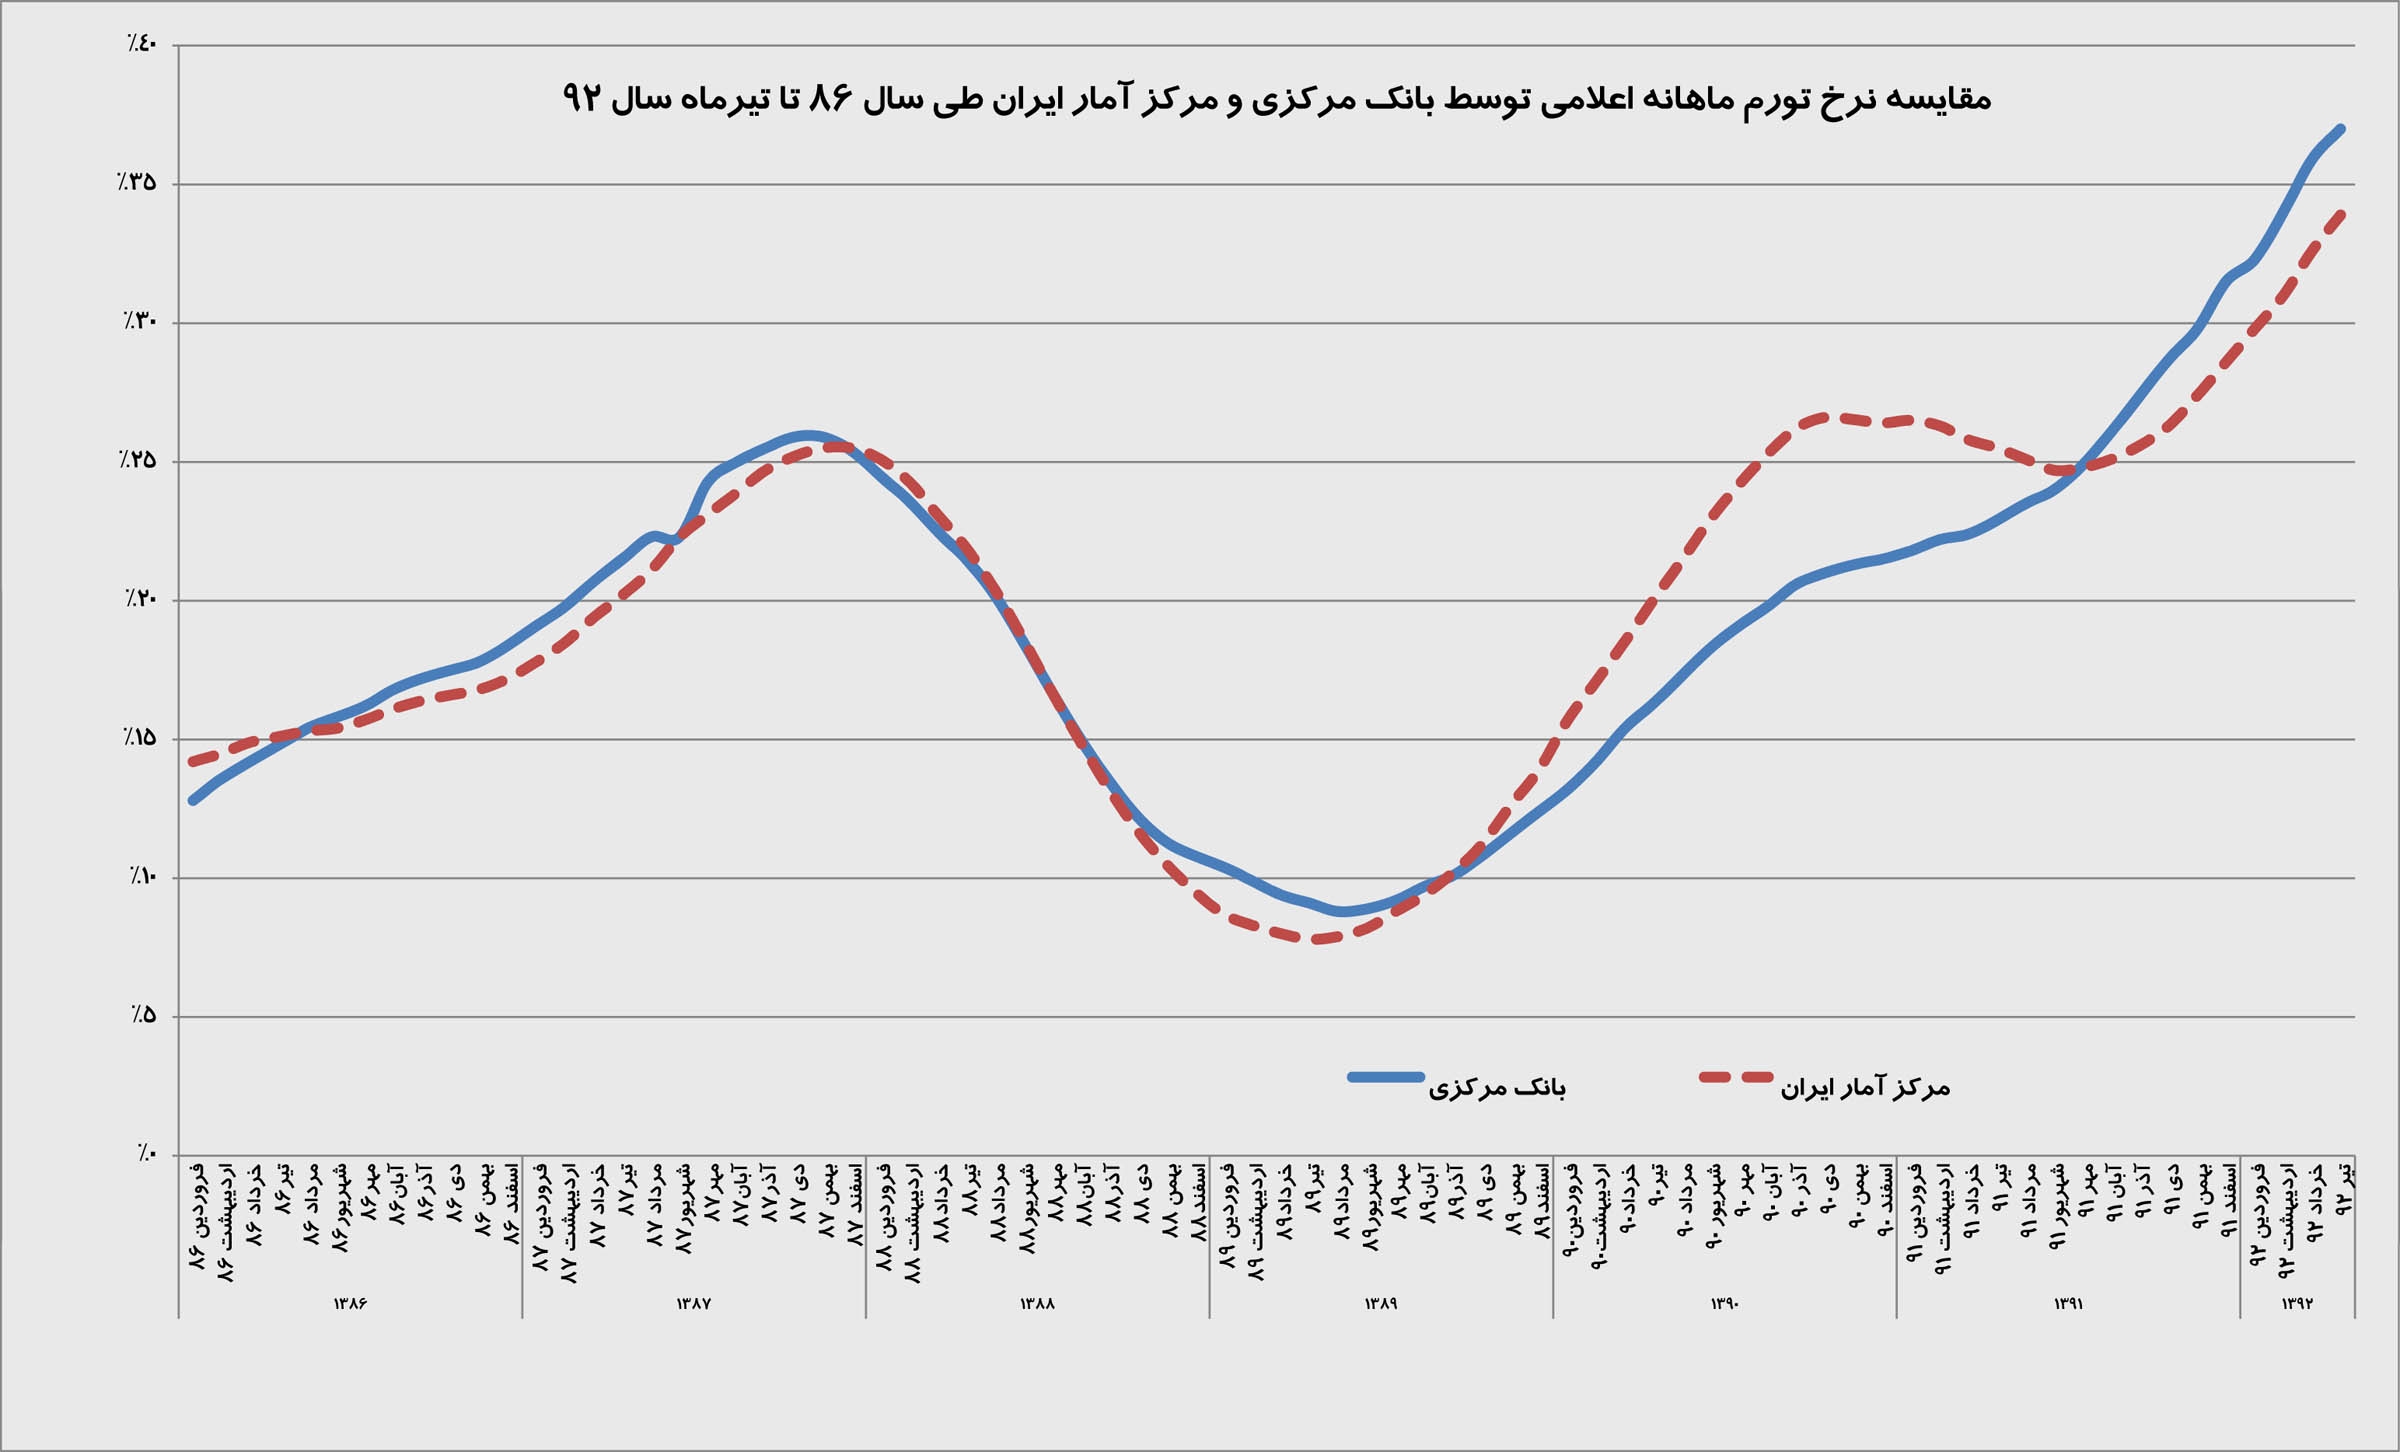 مقایسه نرخ تورم ماهانه اعلامی توسط بانک مرکزی و مرکز آمار ایران طی سال 86 تا تیرماه سال 92